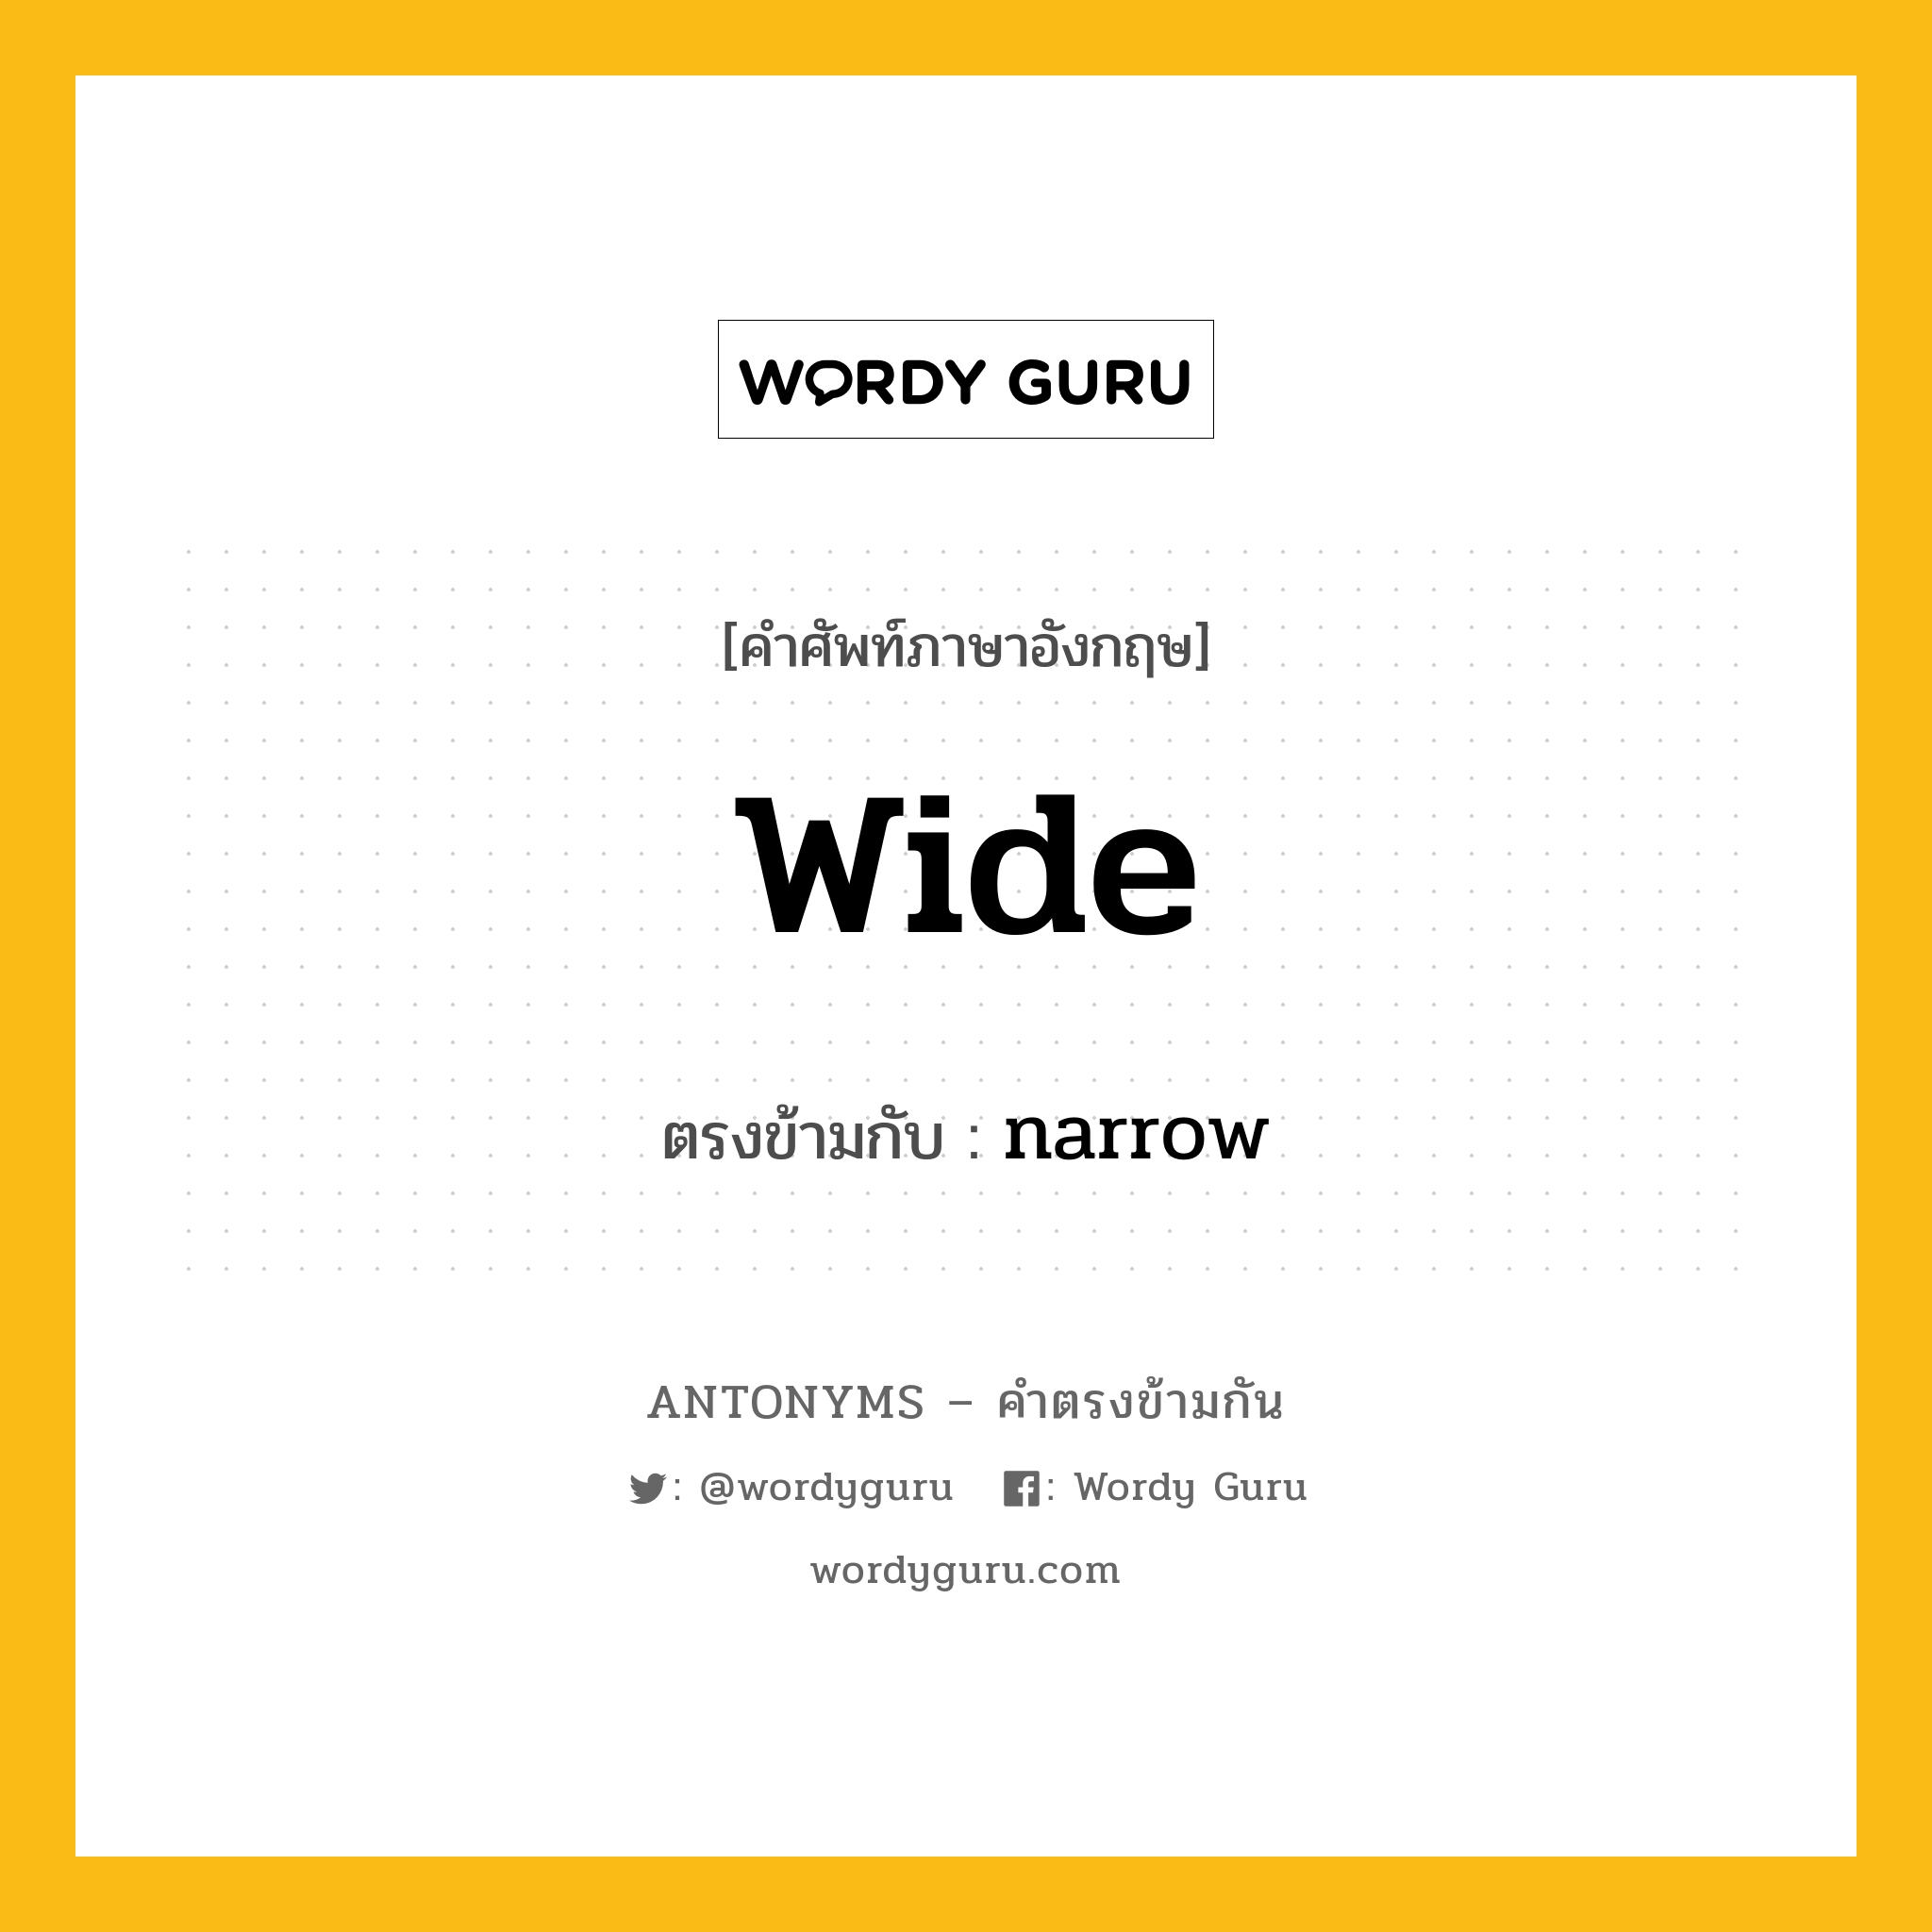 wide เป็นคำตรงข้ามกับคำไหนบ้าง?, คำศัพท์ภาษาอังกฤษ wide ตรงข้ามกับ narrow หมวด narrow